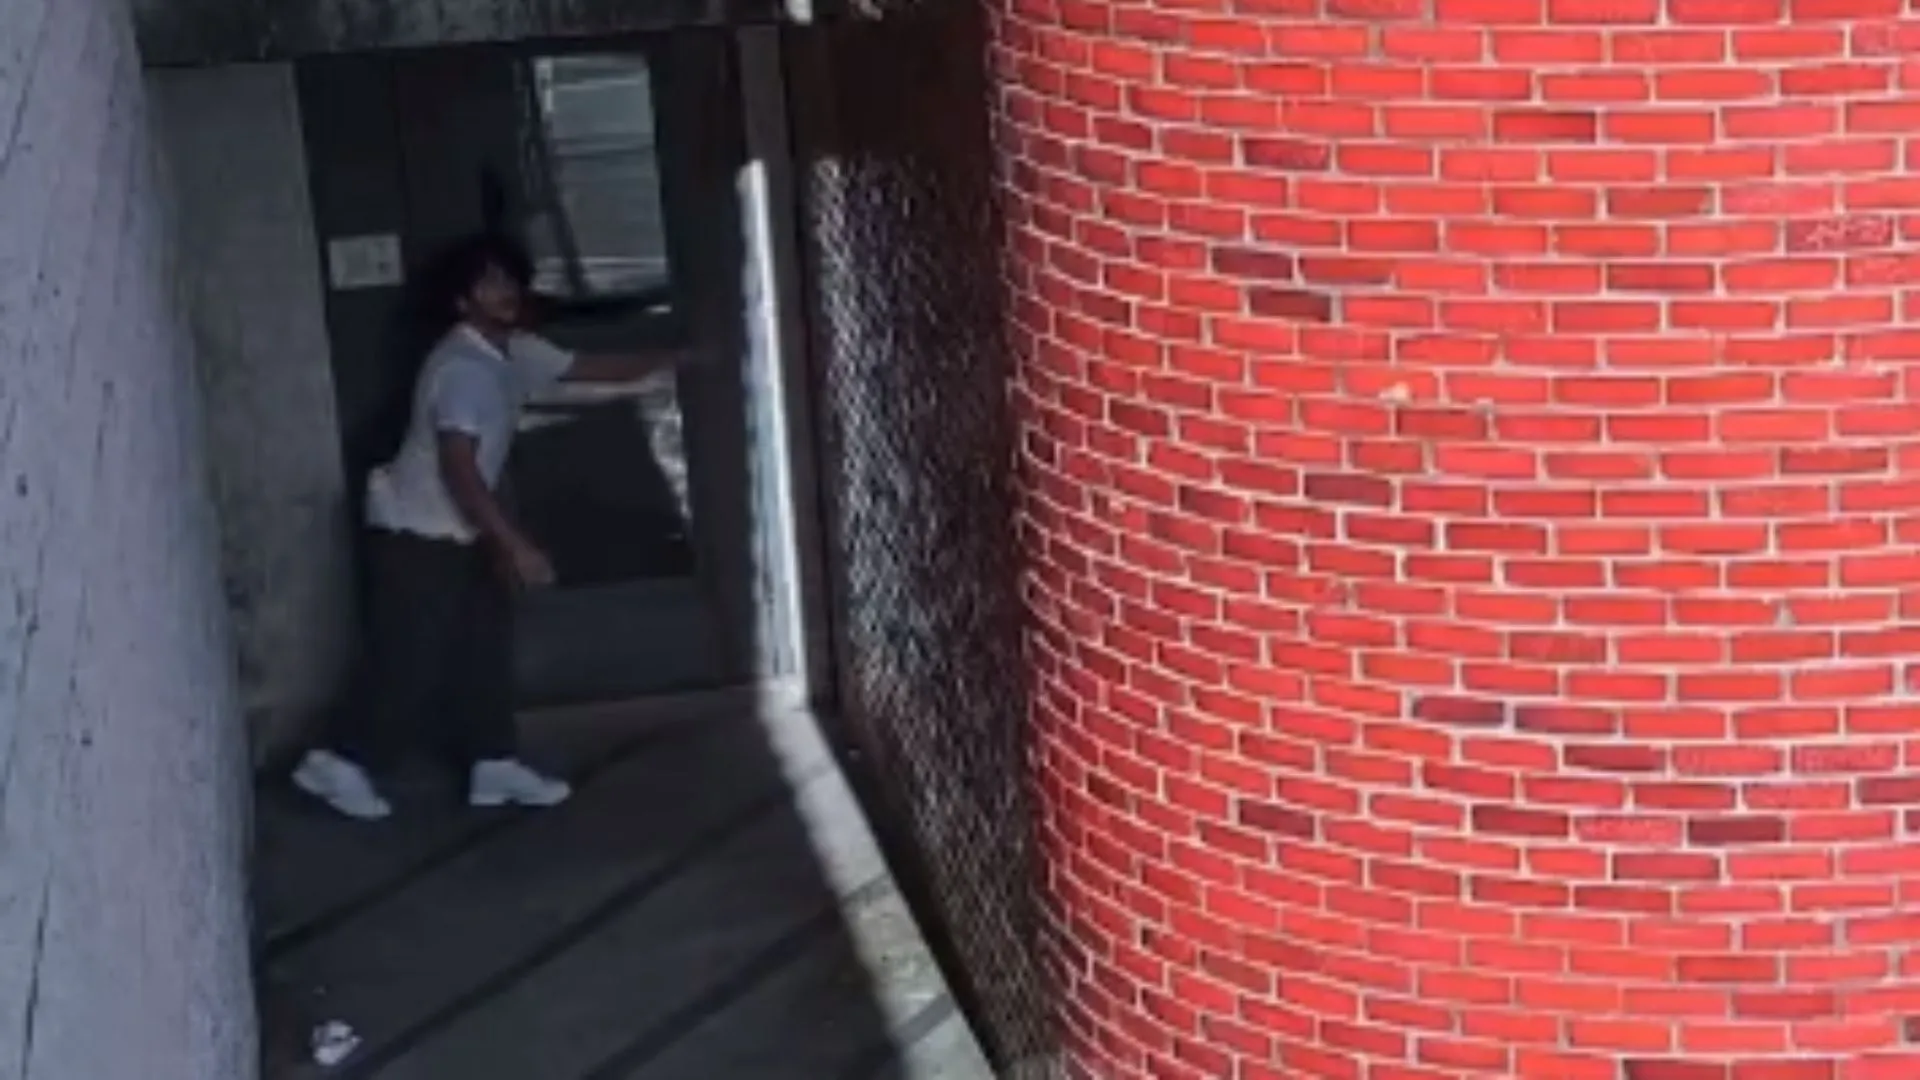 Homem fugiu escalando a parede da prisão, igual o 'homem-aranha'